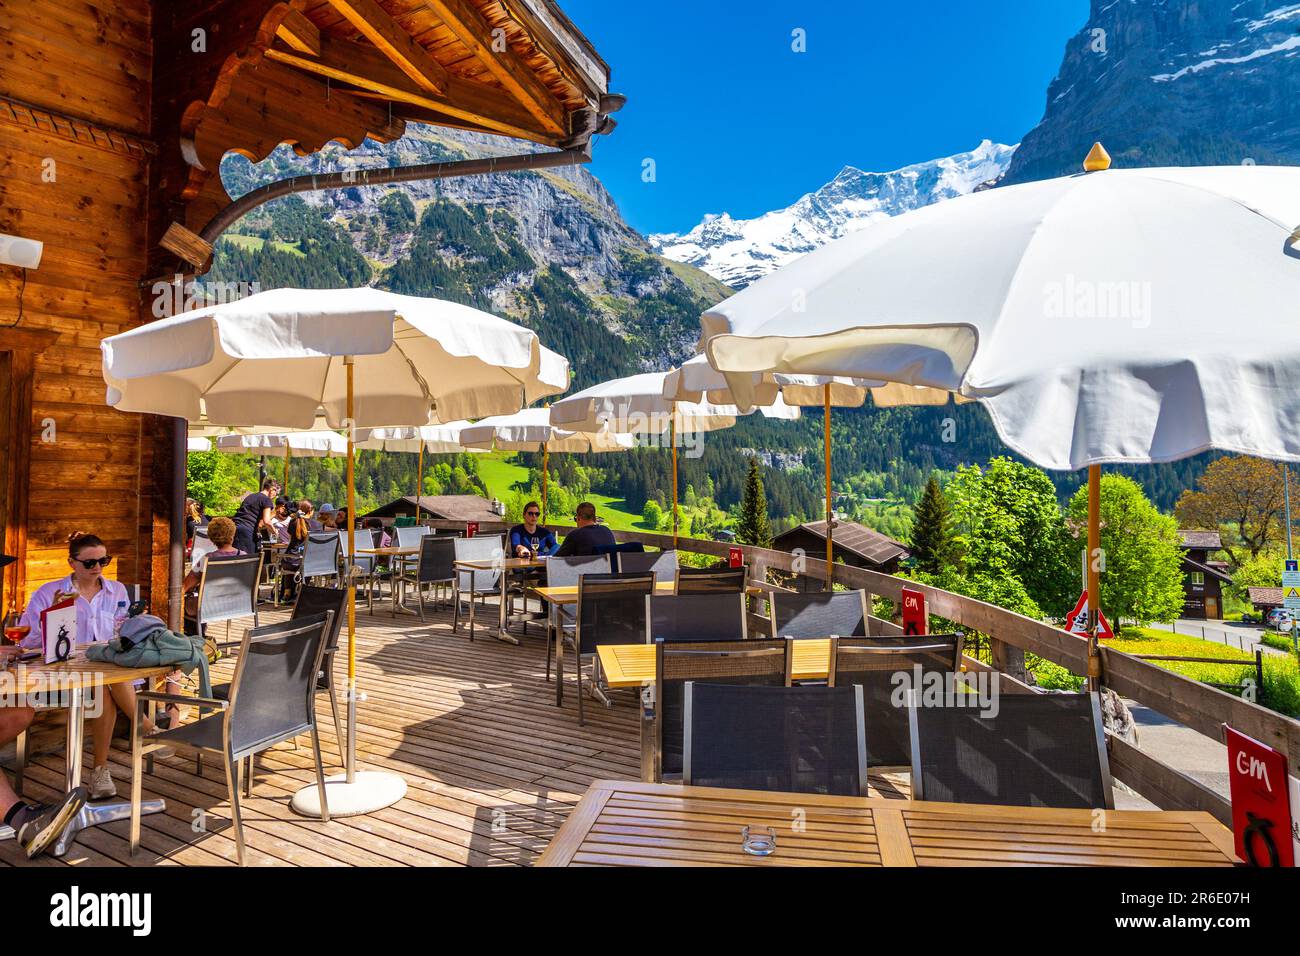 C und M Café Bar Ristorante Terrazza con vista sulle montagne, Grindelwald, Svizzera Foto Stock